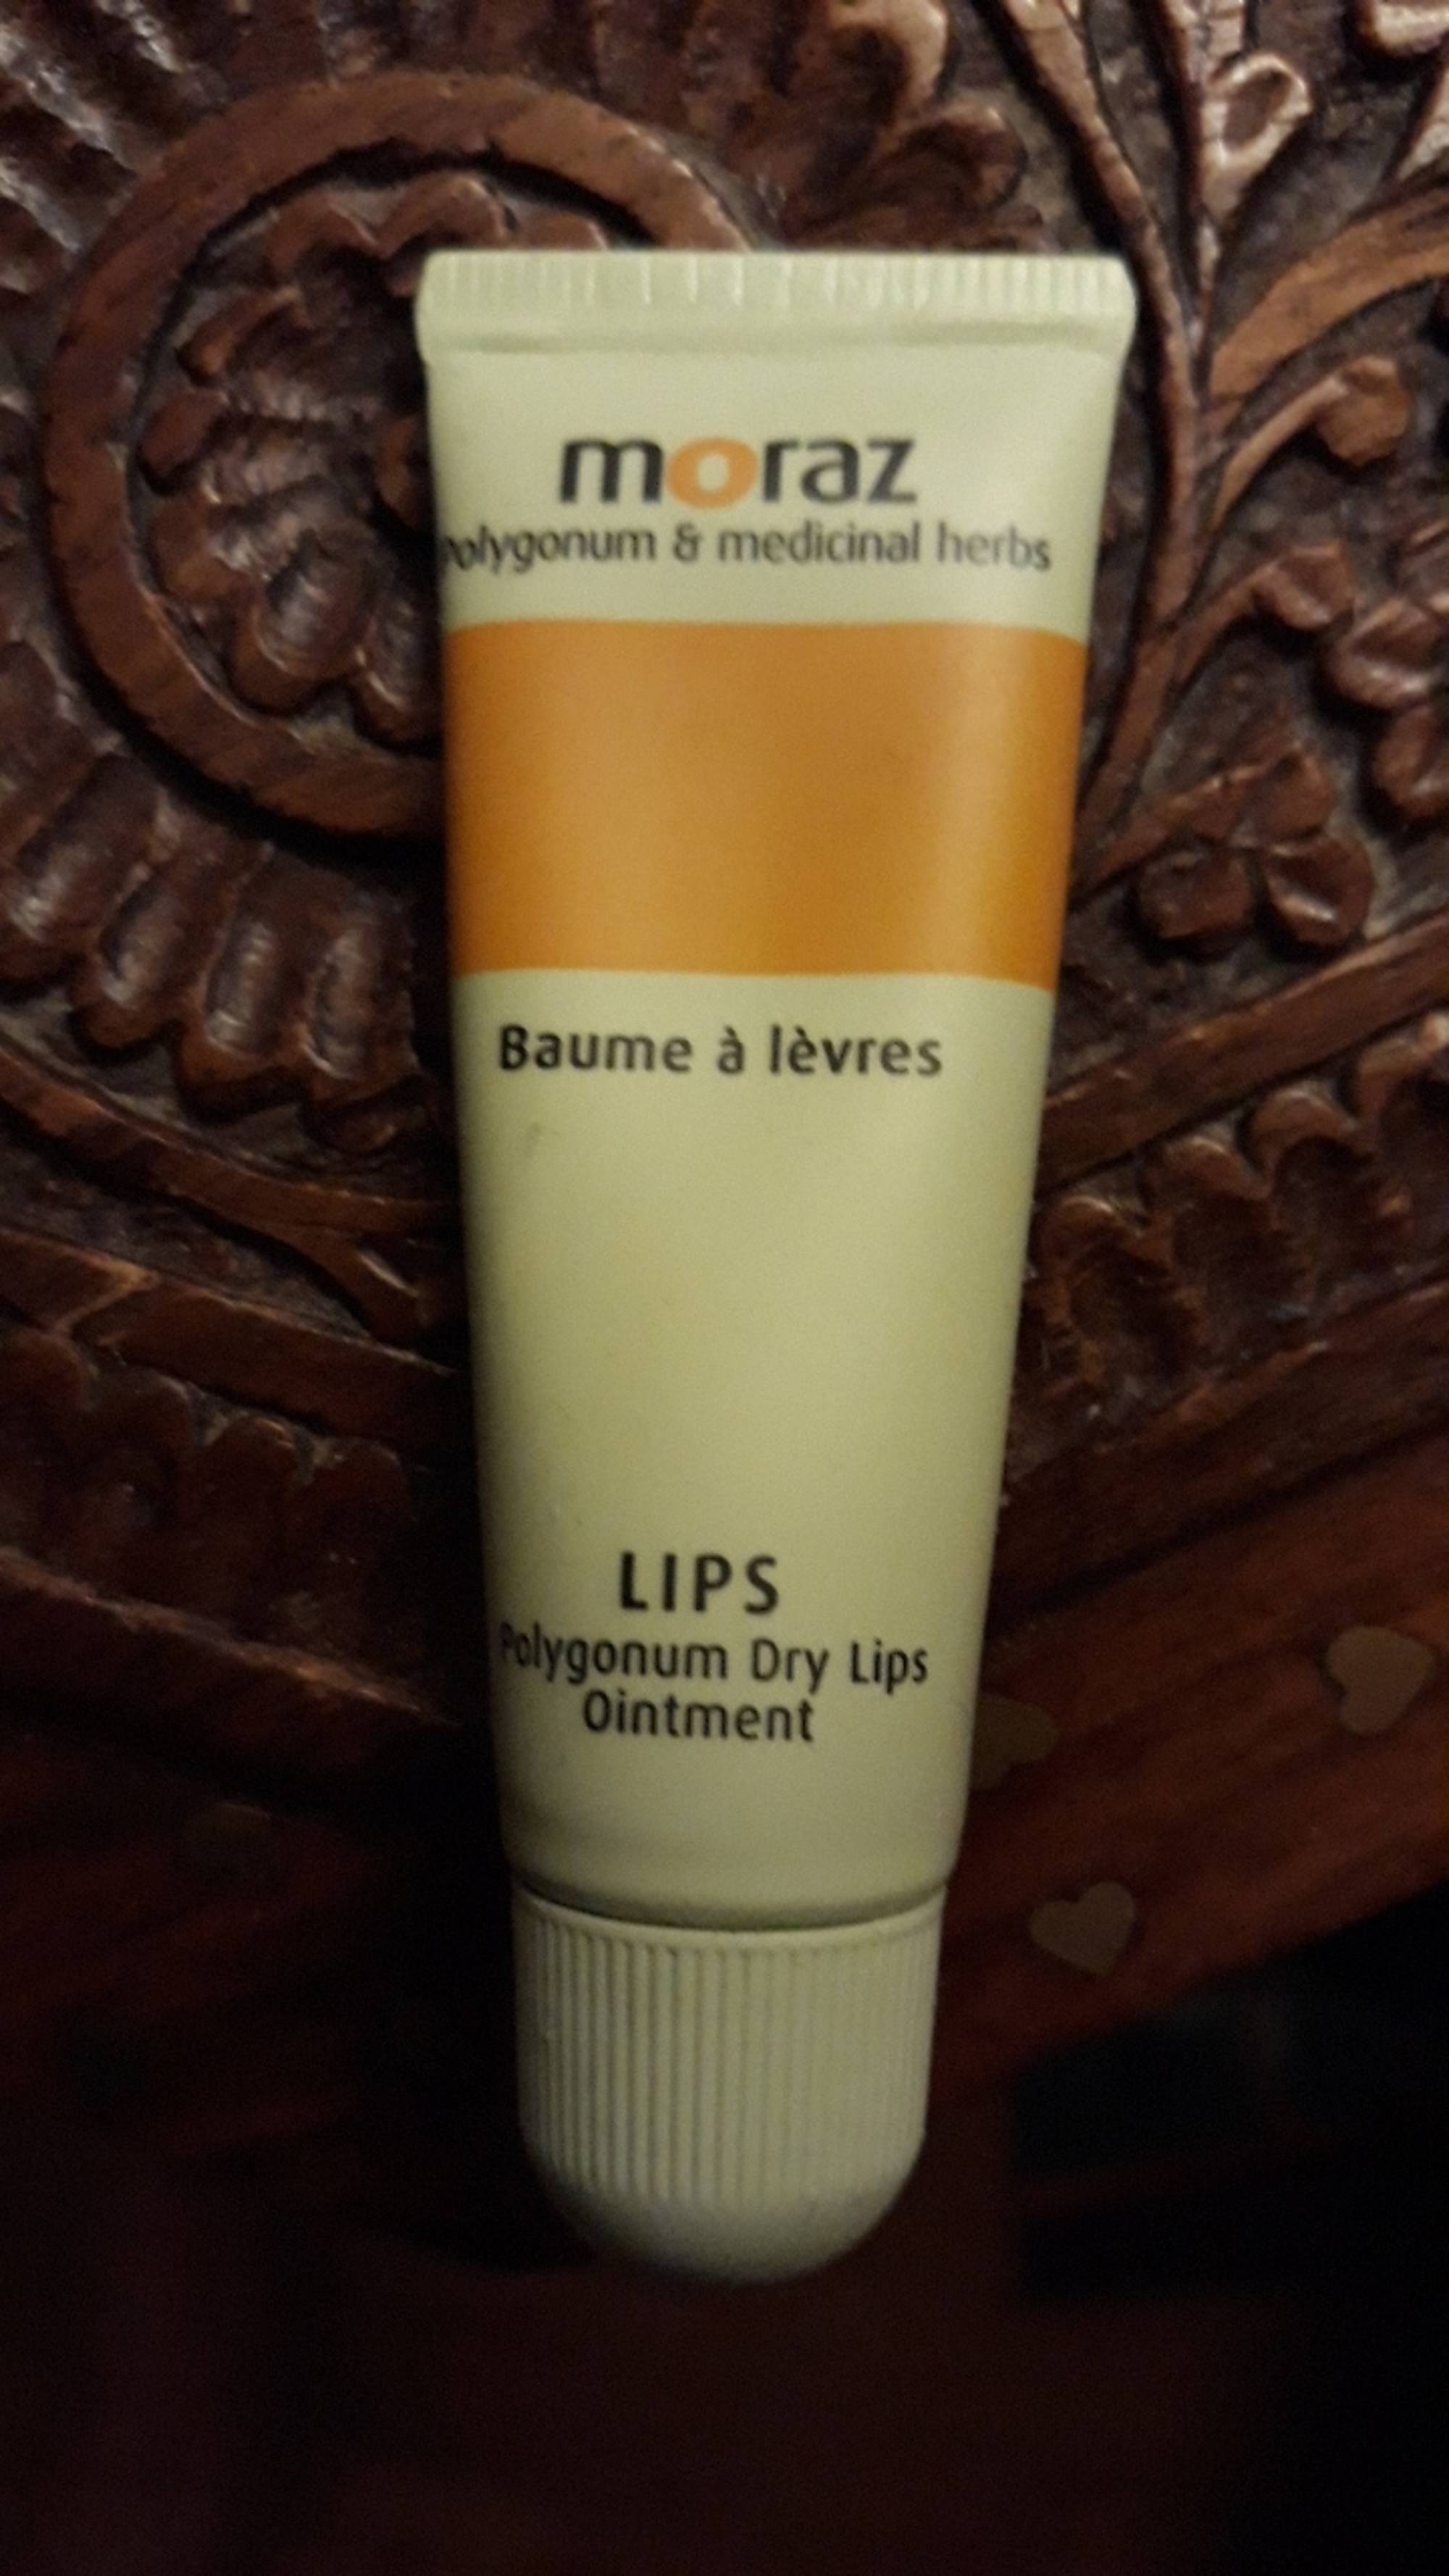 MORAZ - Polygonum dry lips ointment - Baume à lèvres